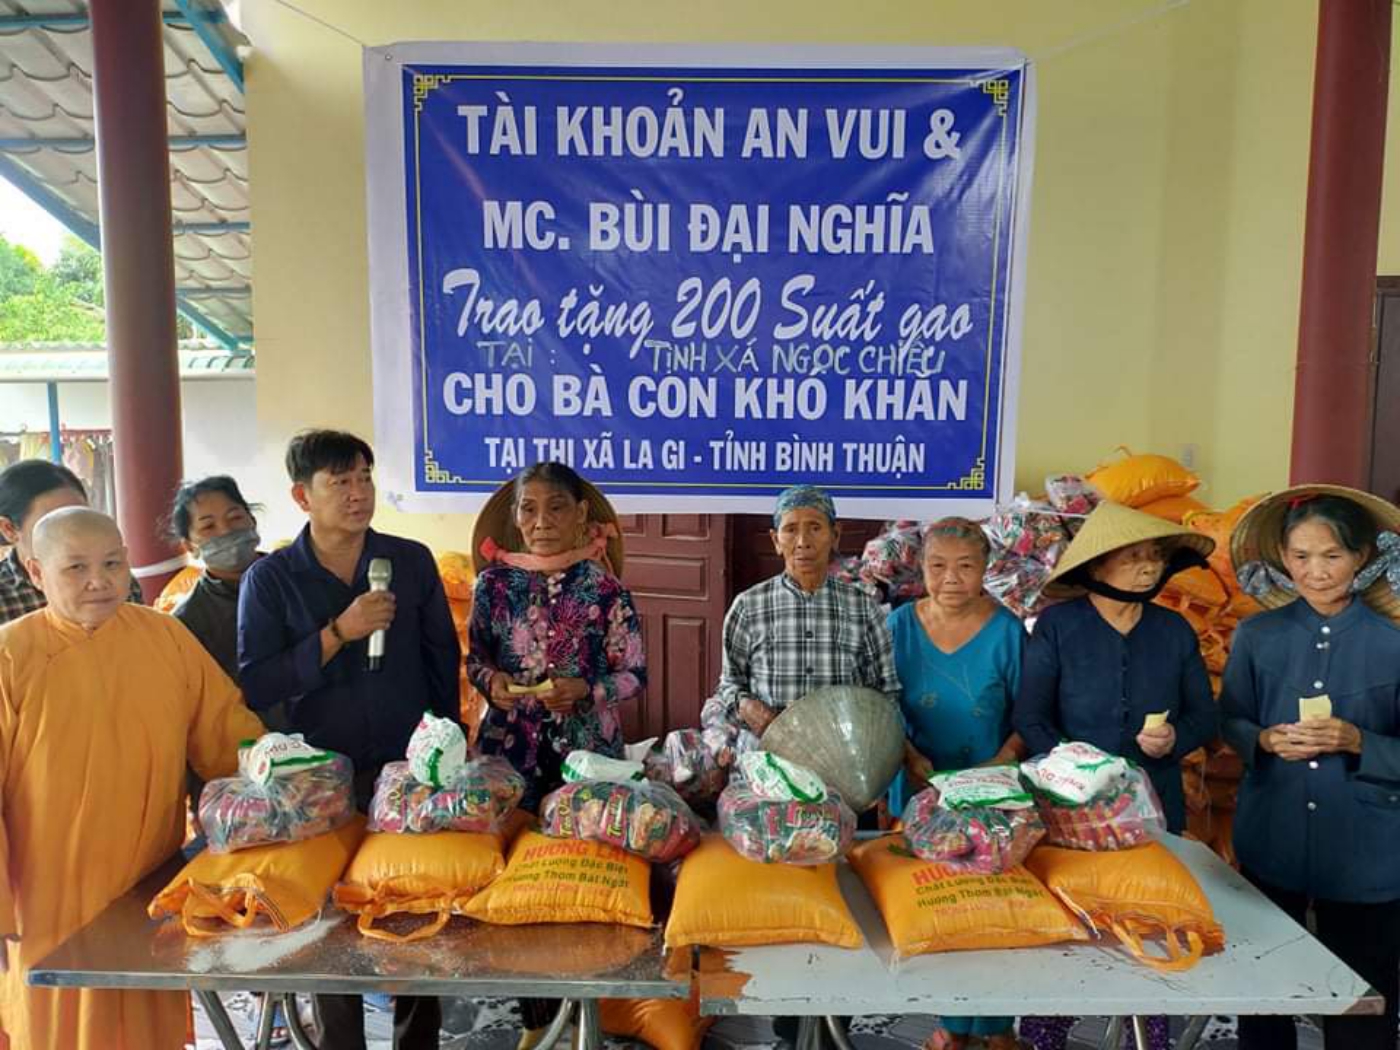 Bình Thuận: Tịnh xá Ngọc Chiếu phát quà từ thiện 